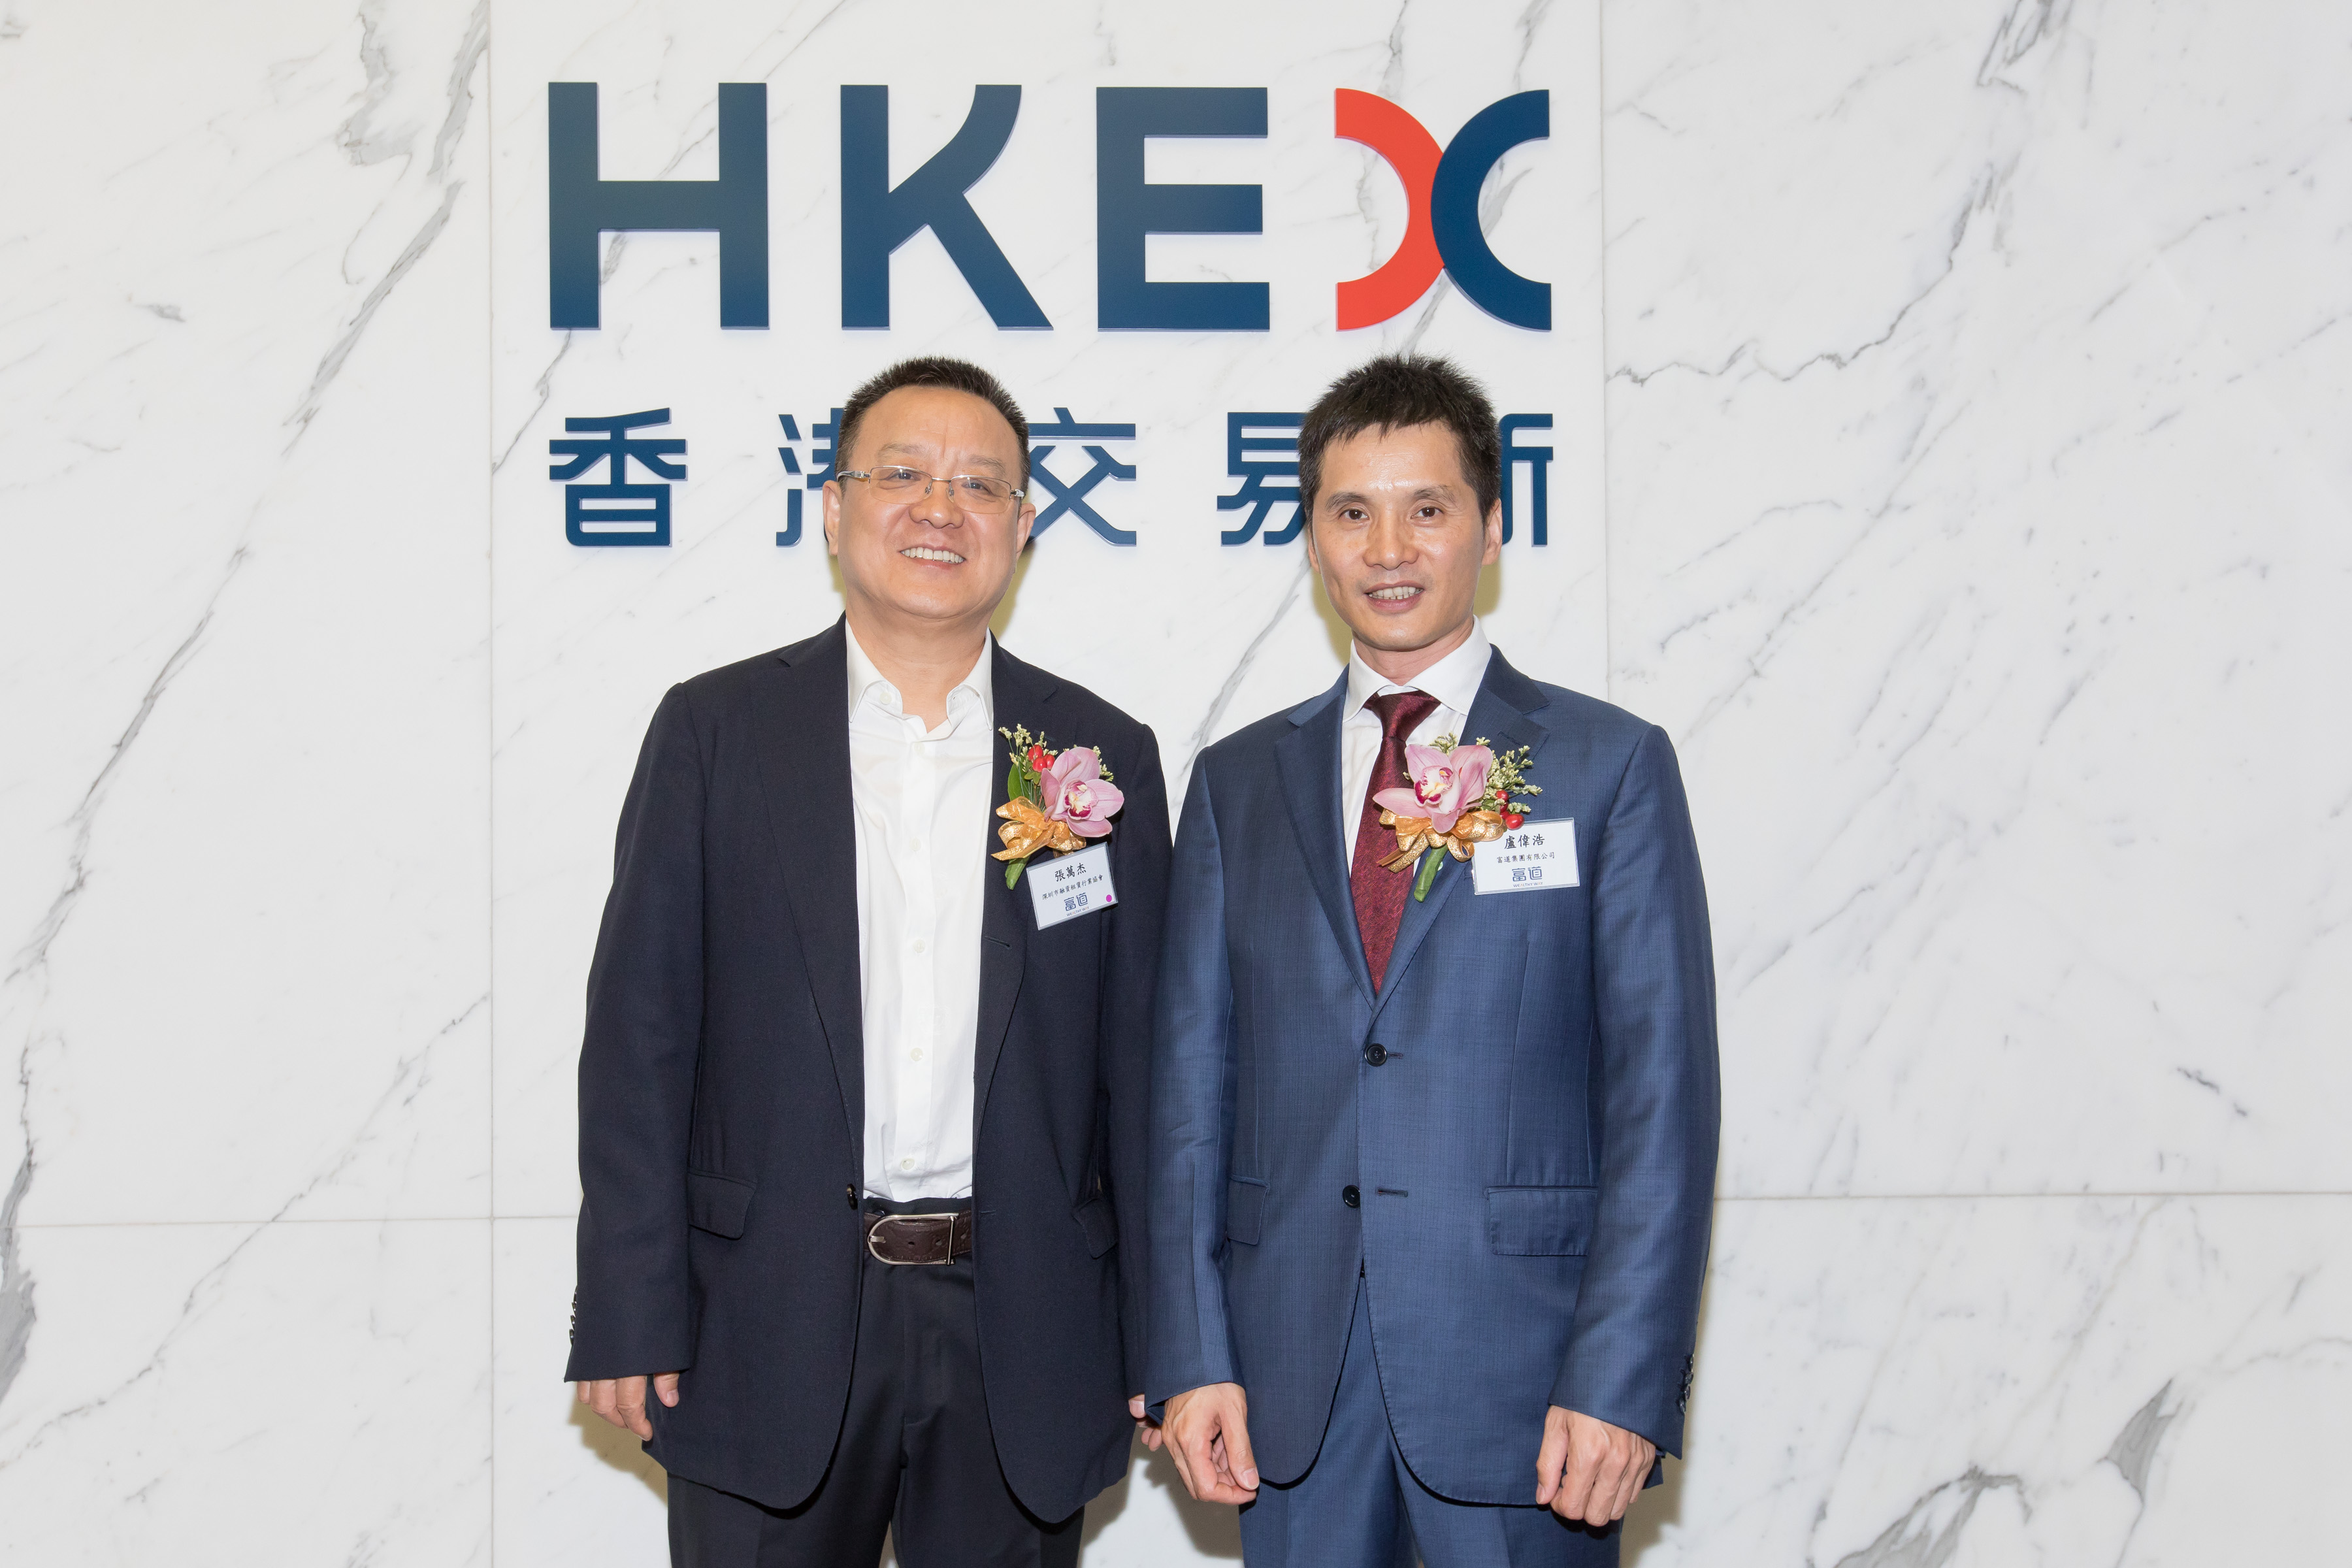 协会副会长单位—富道集团有限公司 于香港联合交易所主板挂牌上市